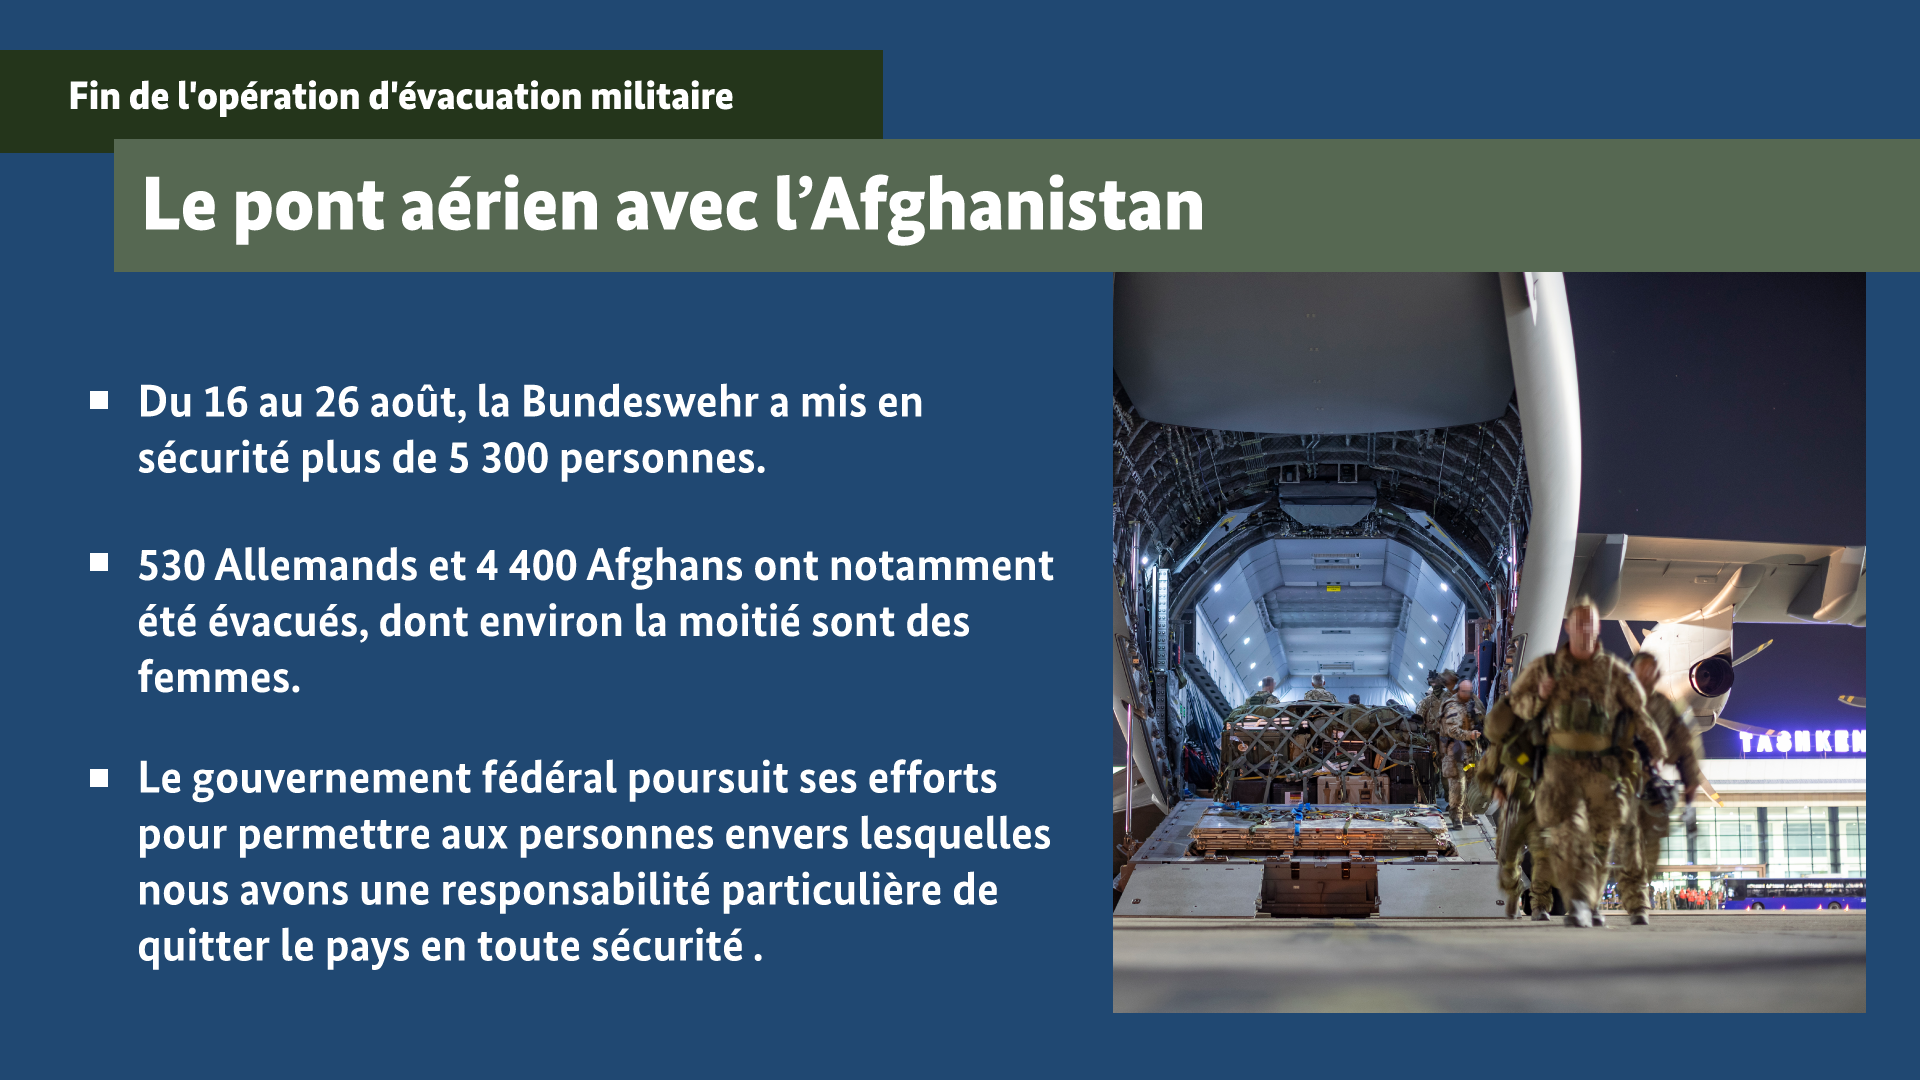 Infographie intitulée « Le pont aérien avec l’Afghanistan » (Pour plus d’informations, une description détaillée est disponible sous l’image.)